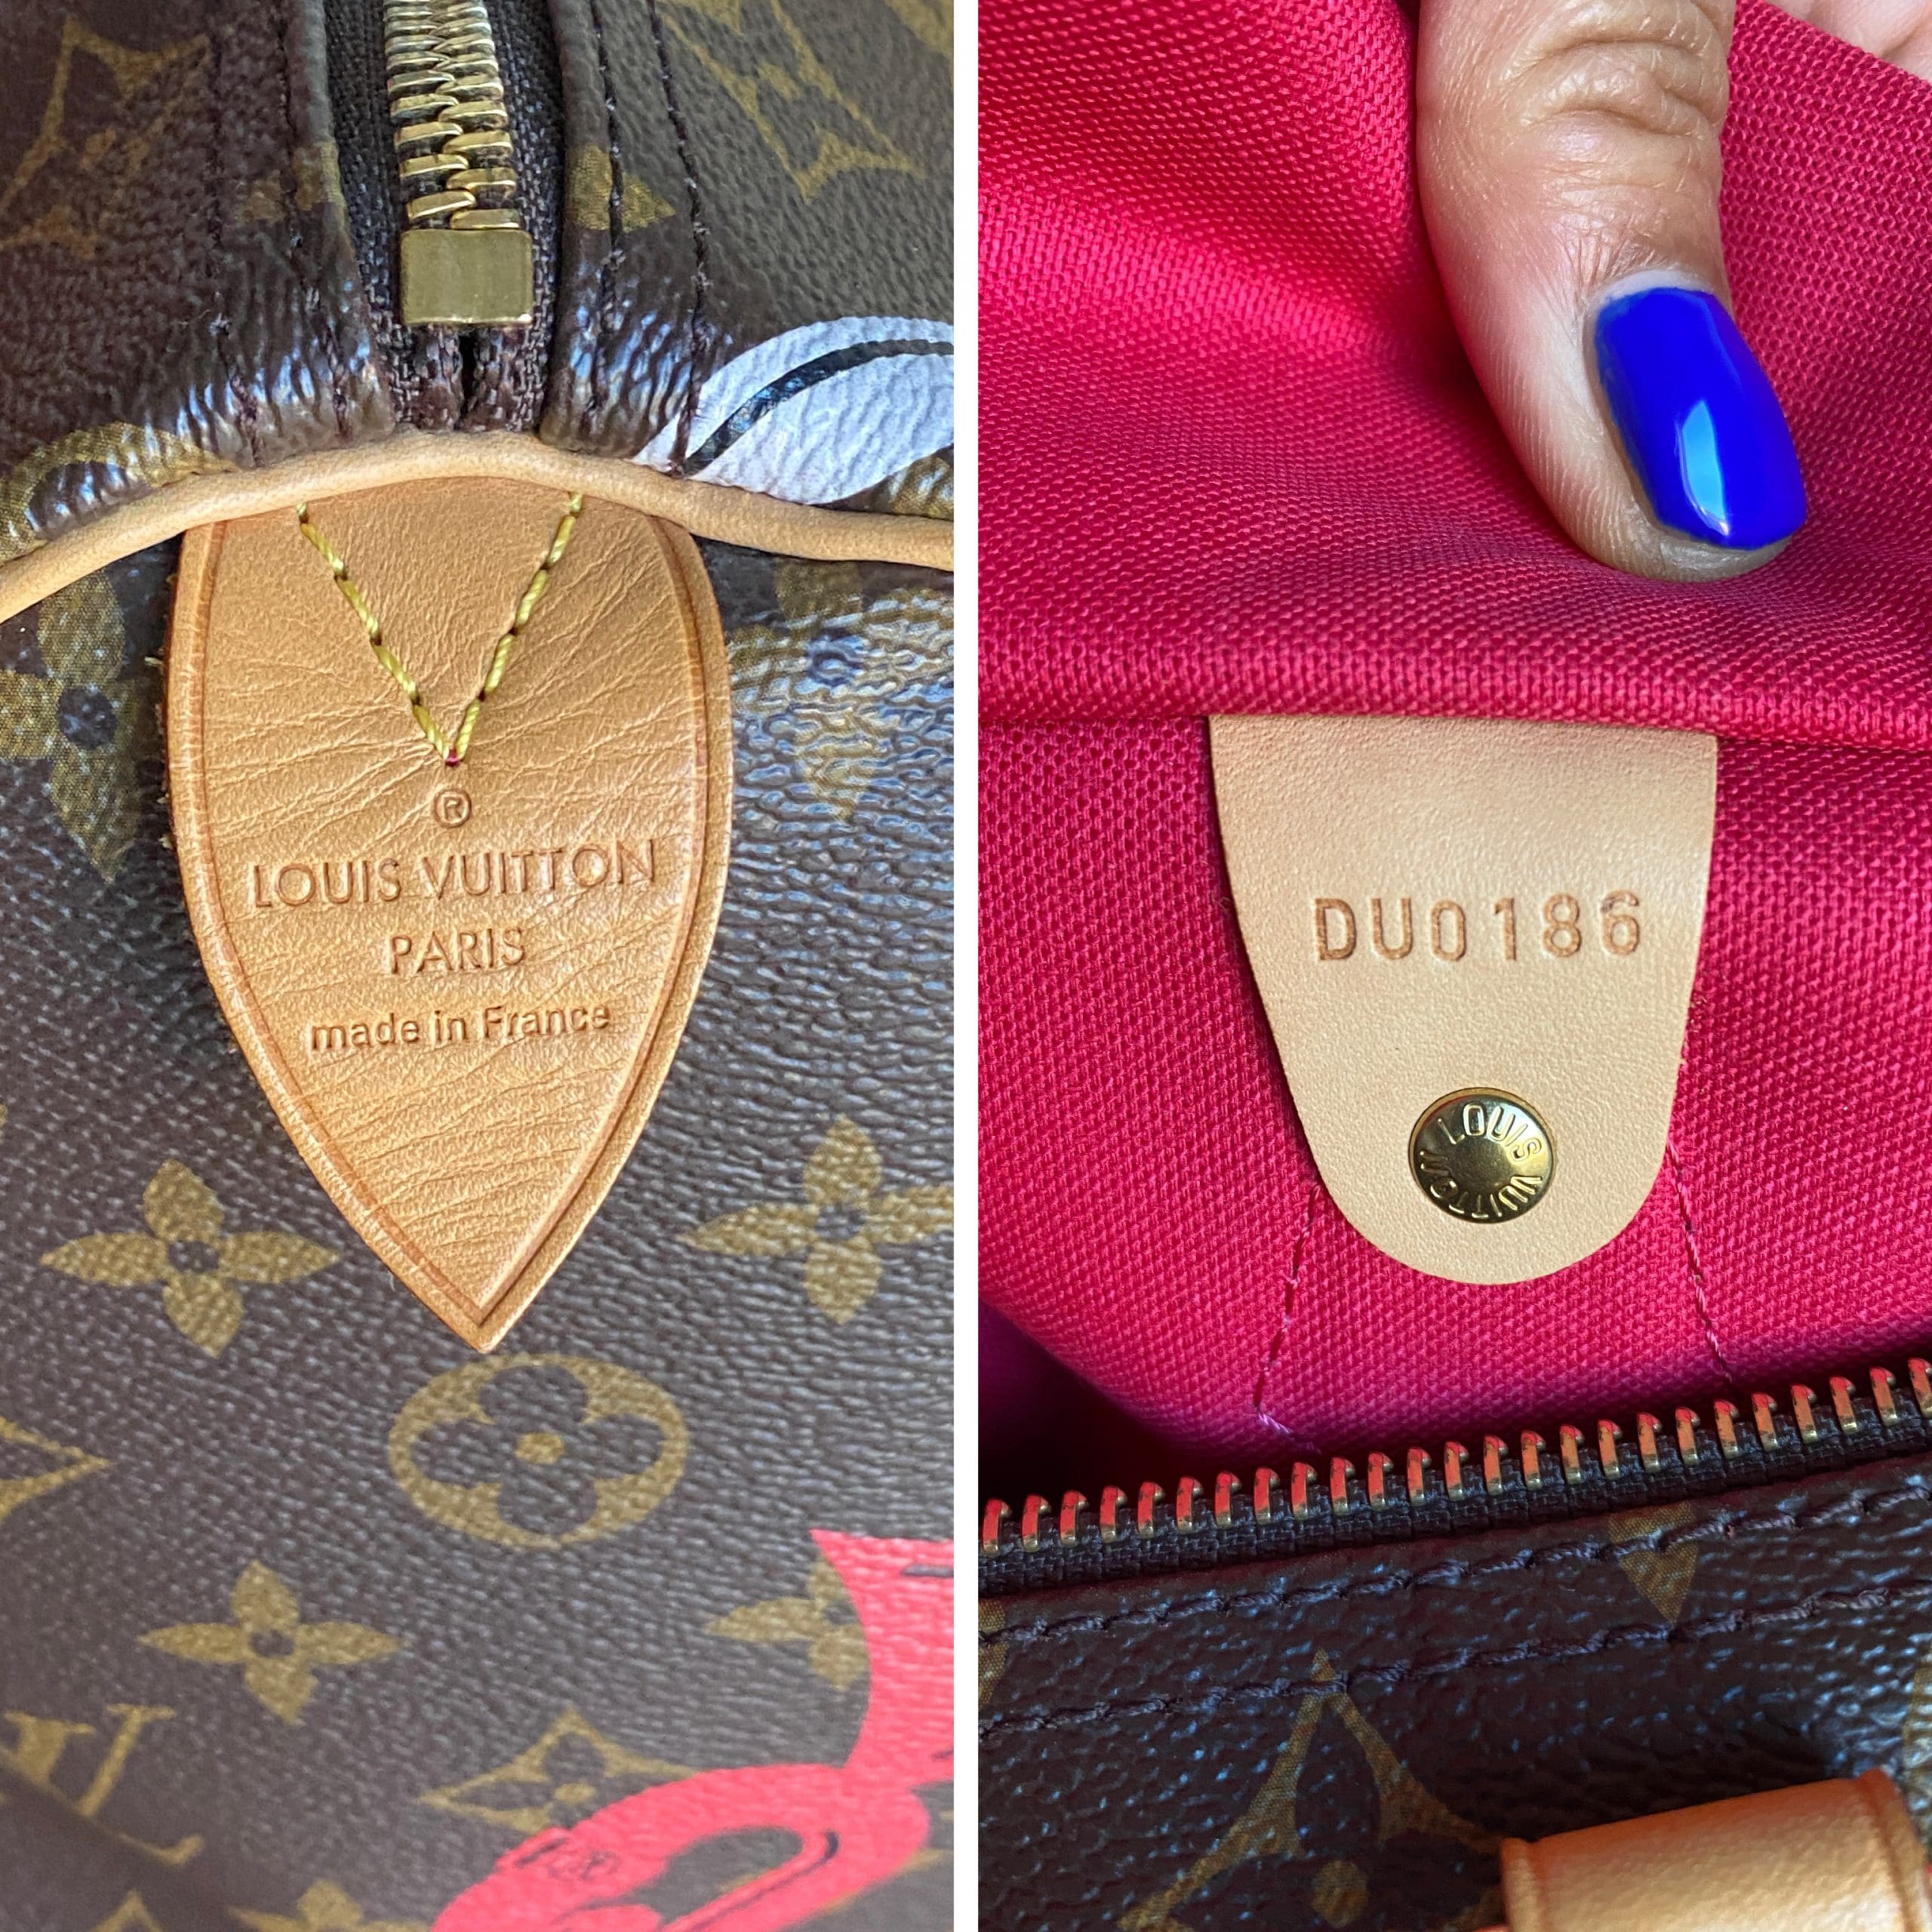 Poppyhearts' elegant peach color flower chain on customer's LV bag